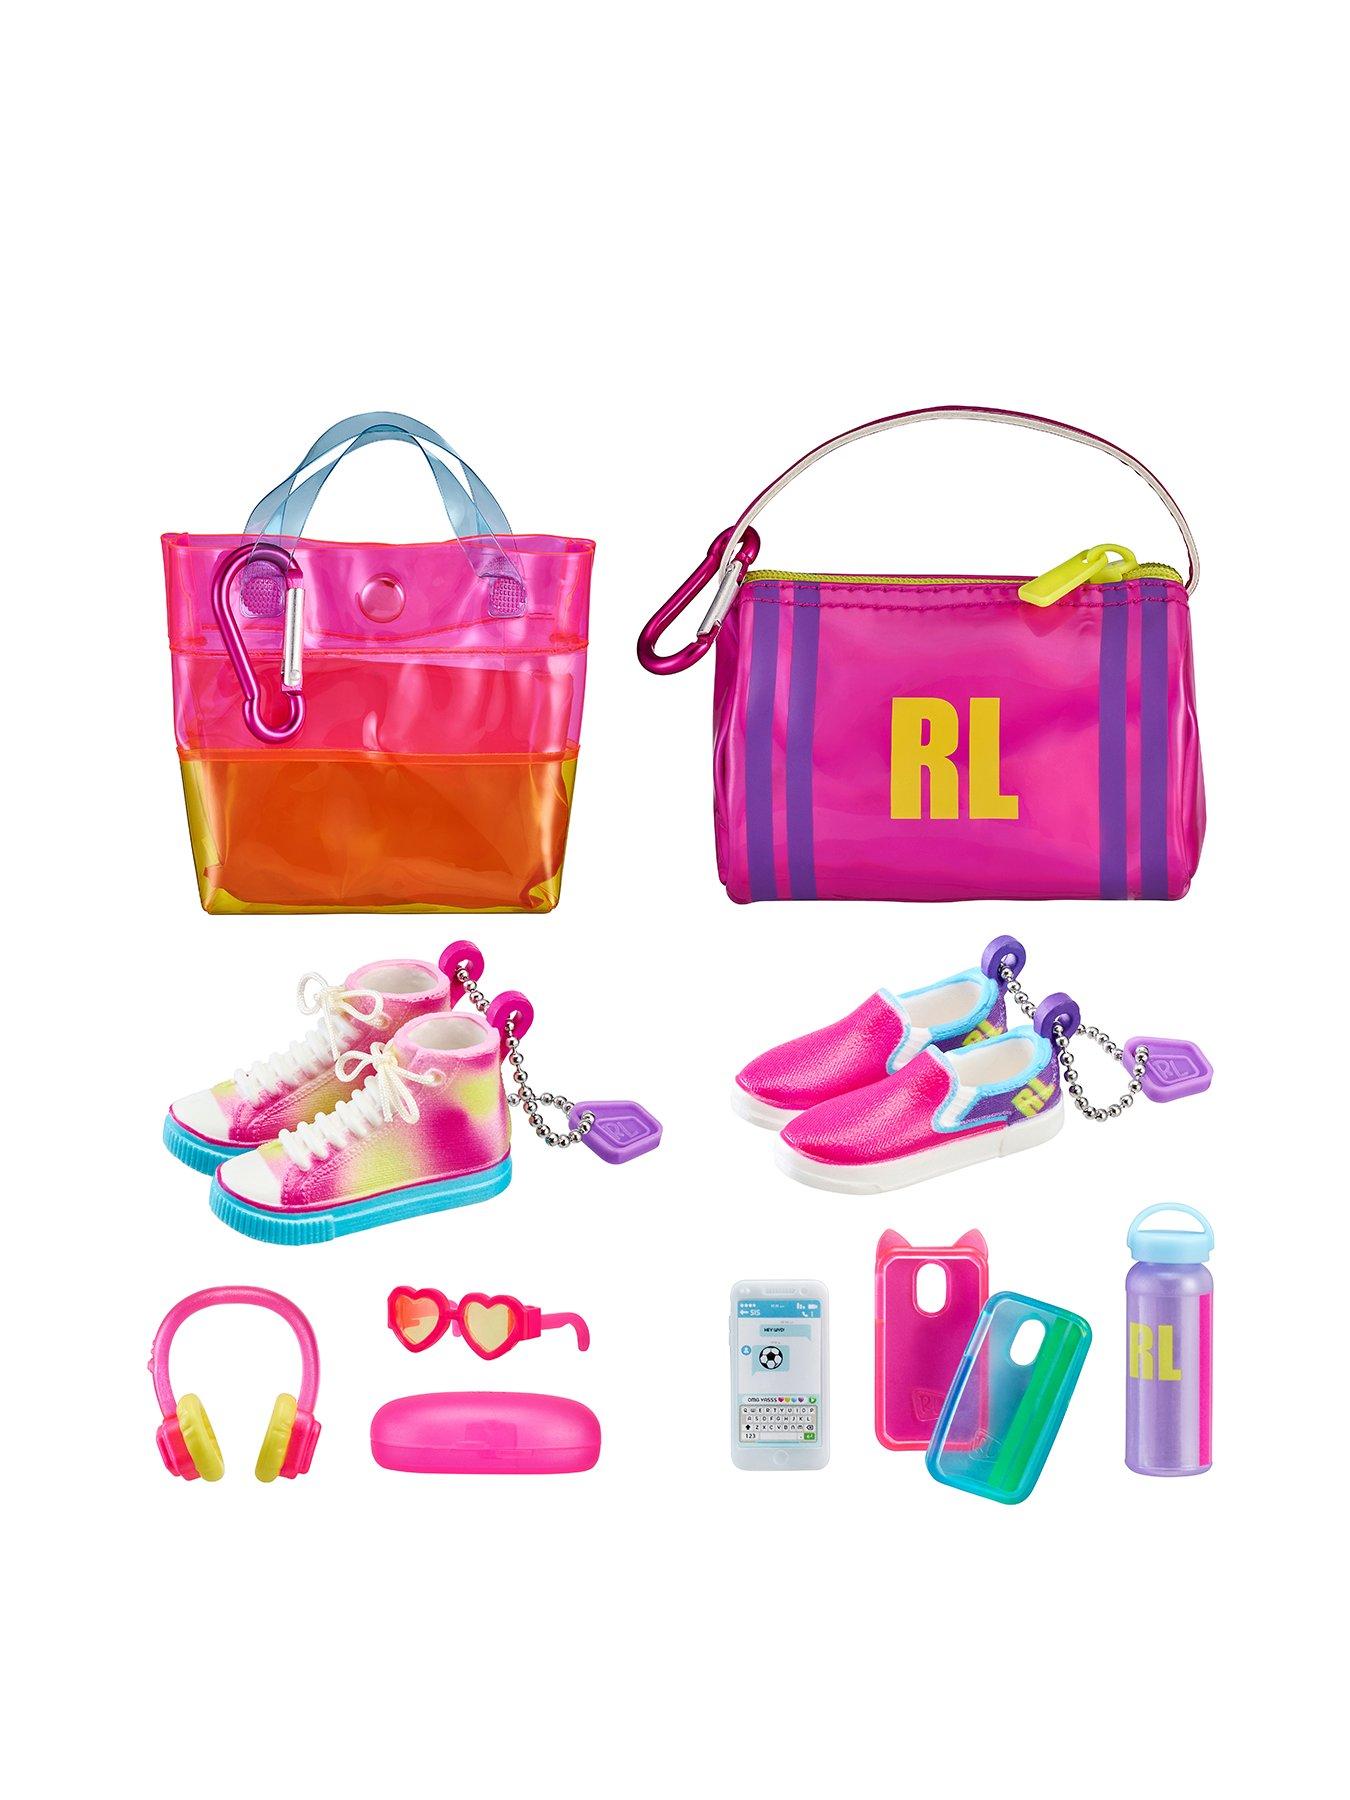 REAL LITTLES Locker + Handbag Bundle Pack! Each Pack Contains an